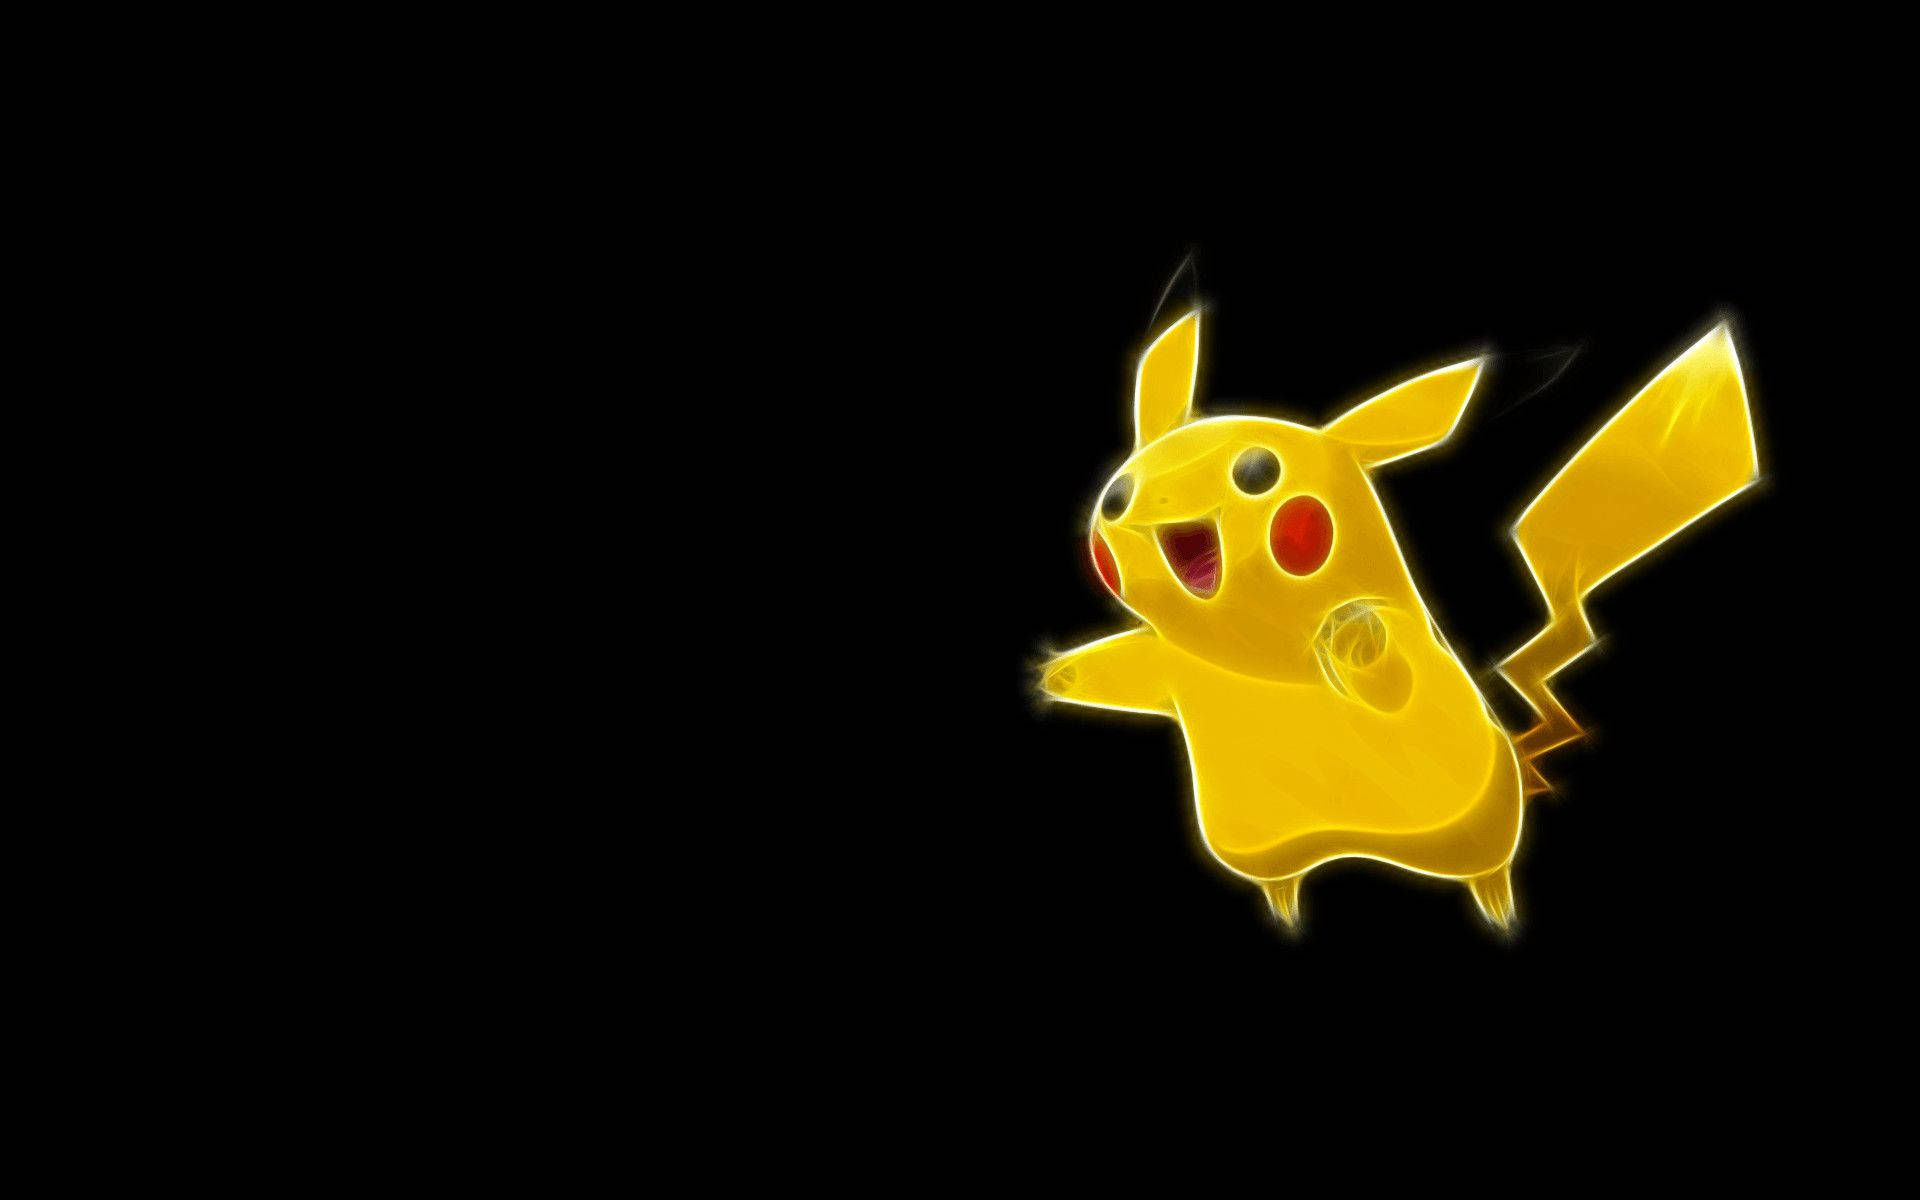 Yellow Pokémon Pikachu 3d Wallpaper